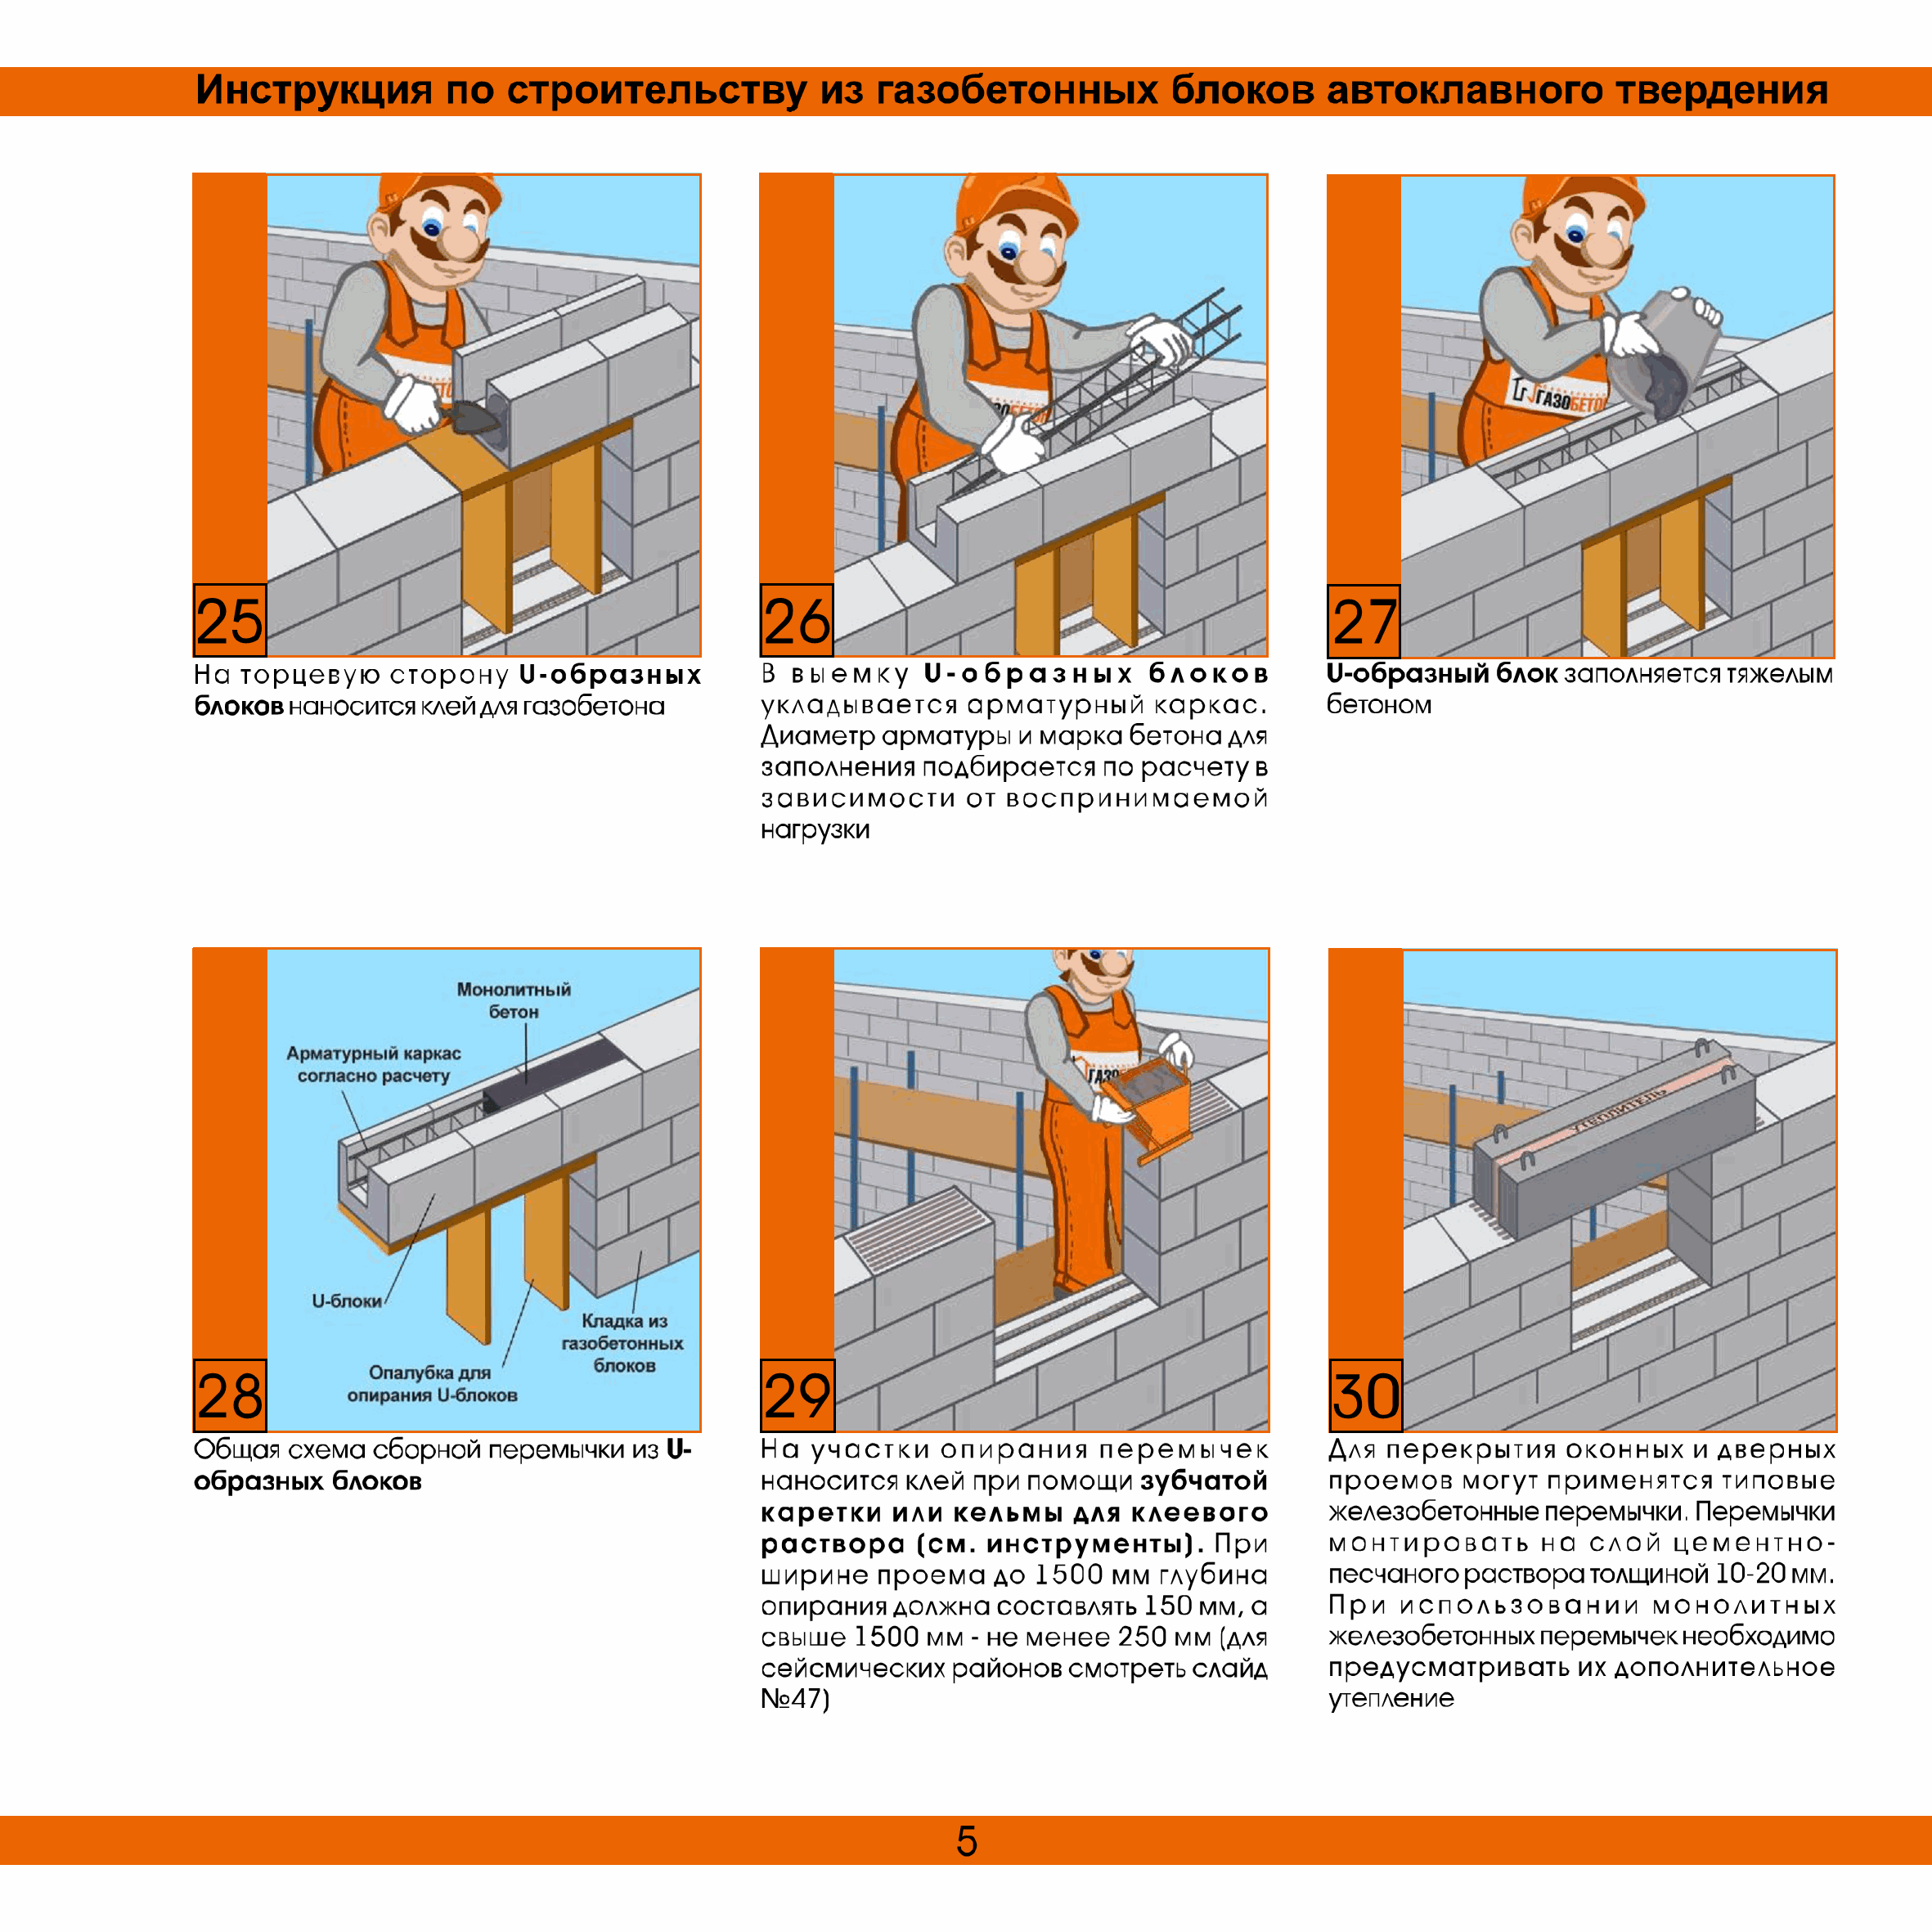 Правила и рекомендации кладки стен из газосиликатных блоков